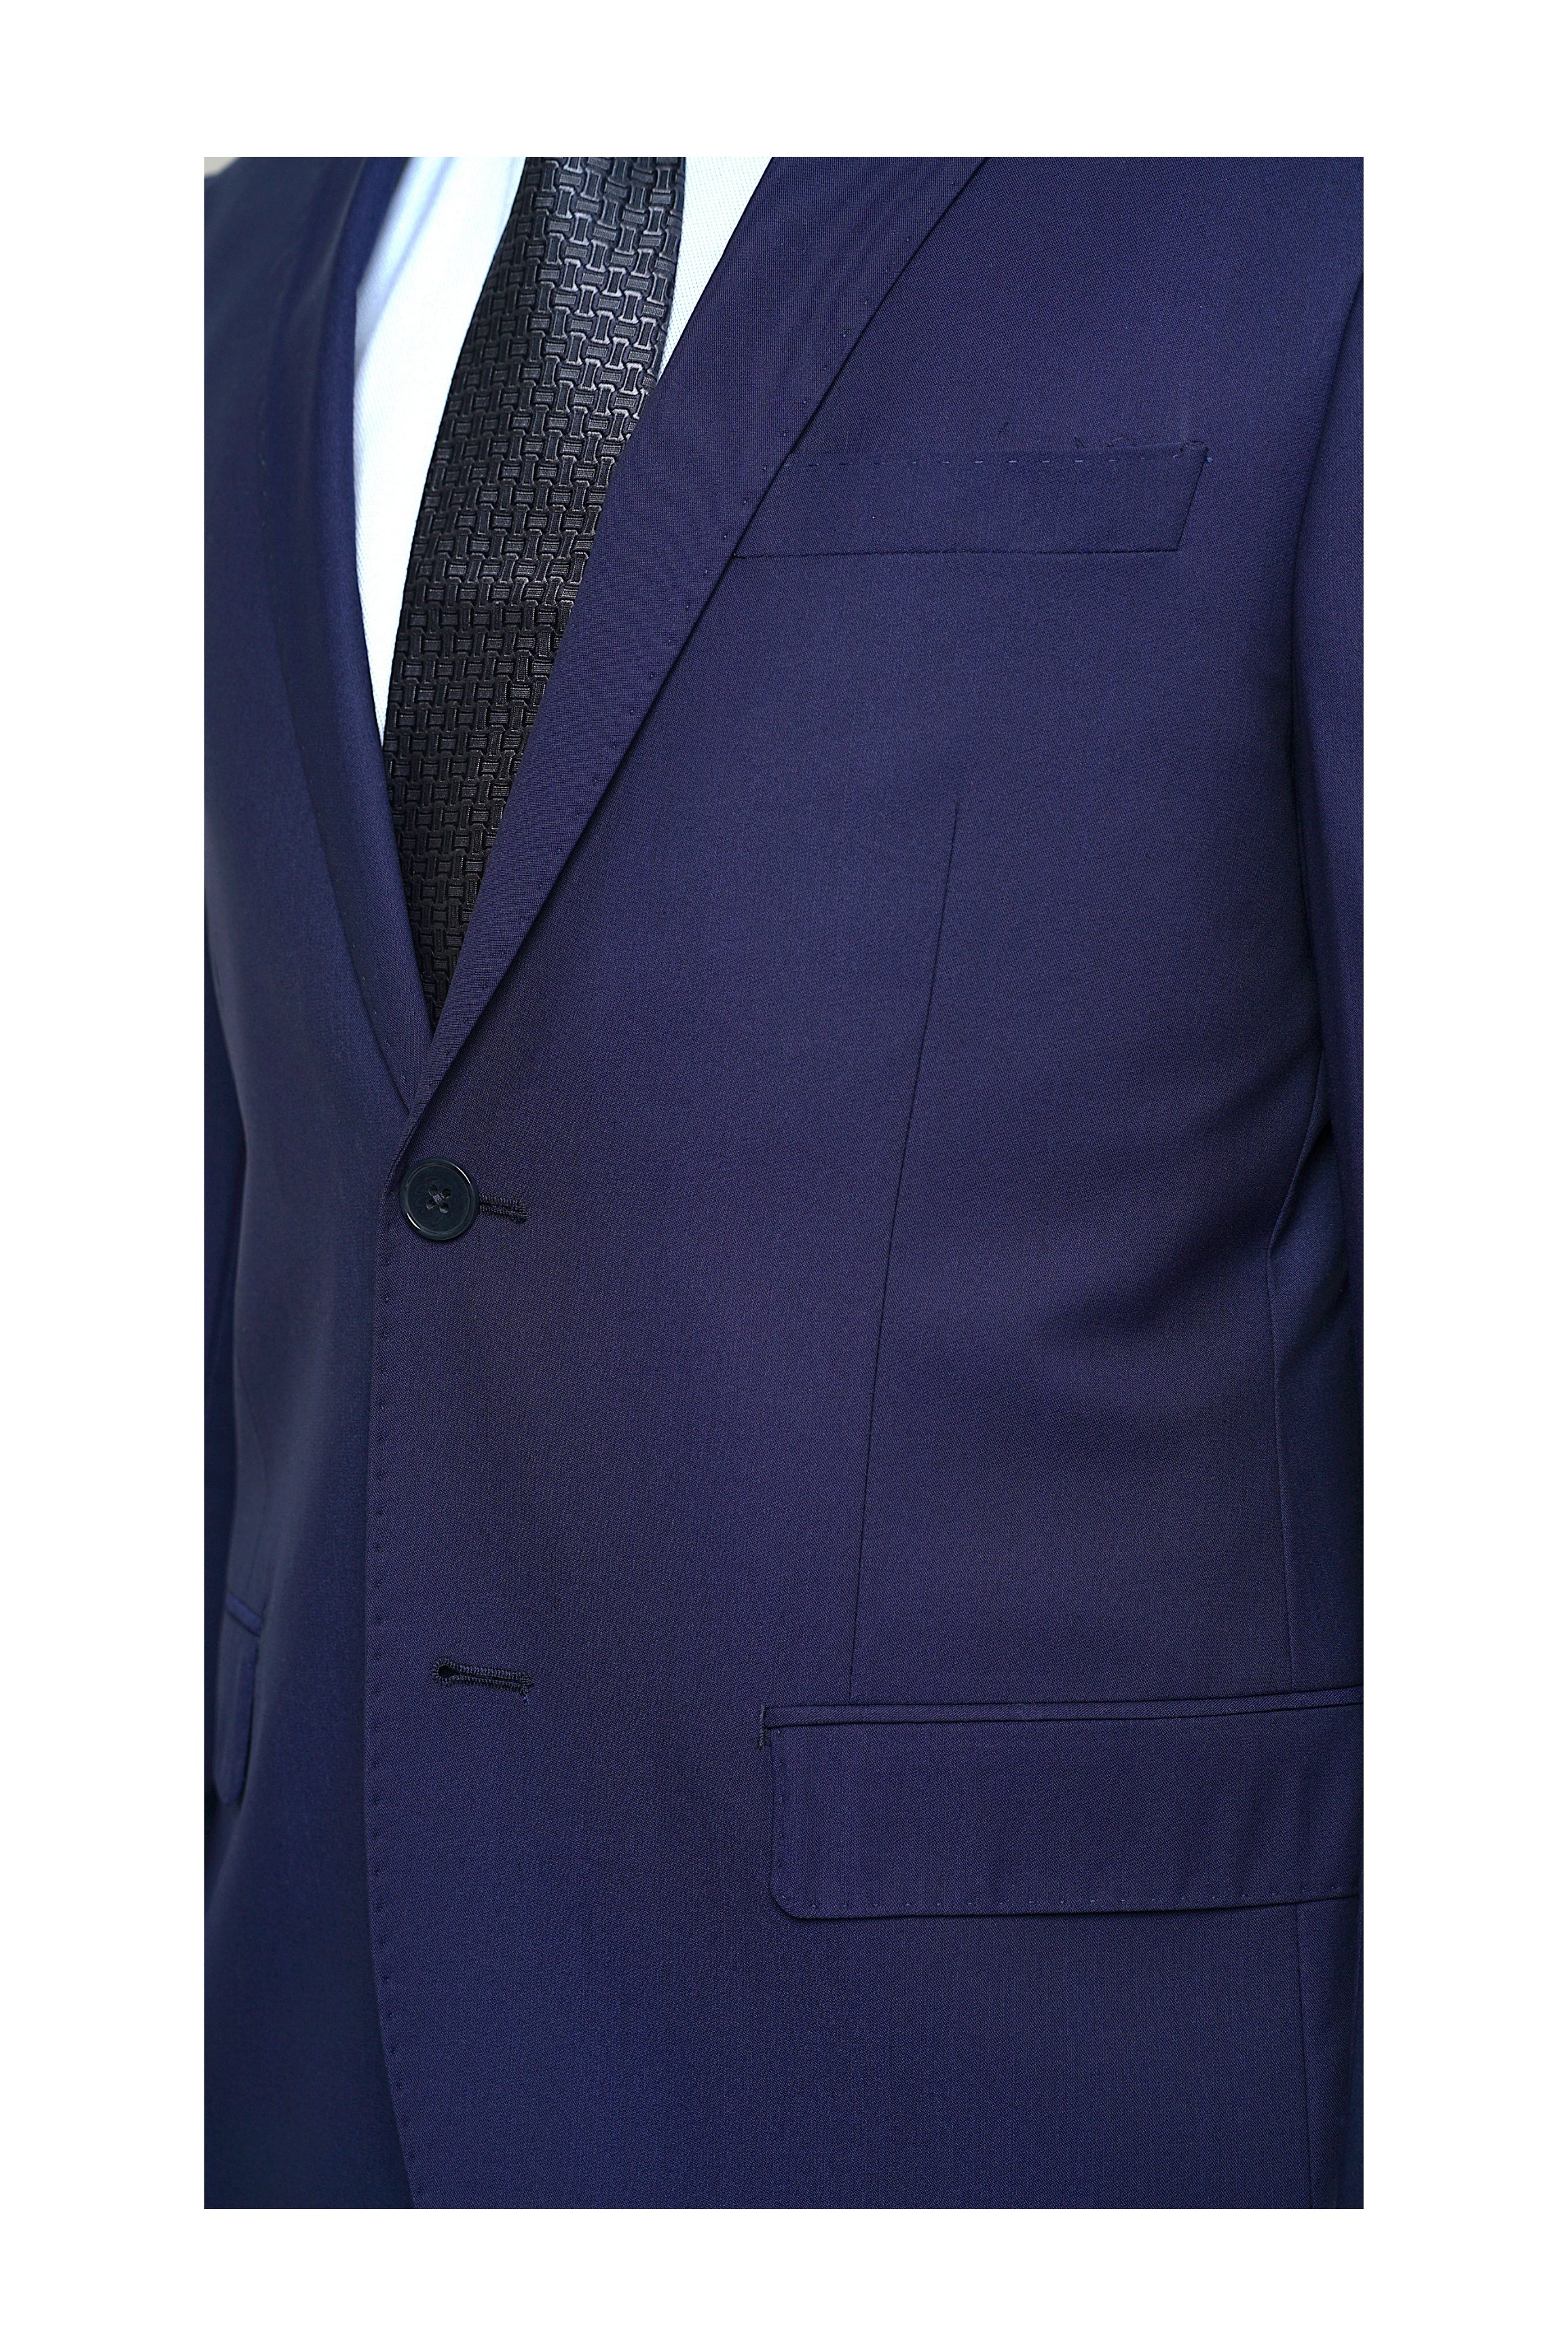 Luxury Tech Euro Fit Suit BEST6930/43-1 - Mastroianni Fashions